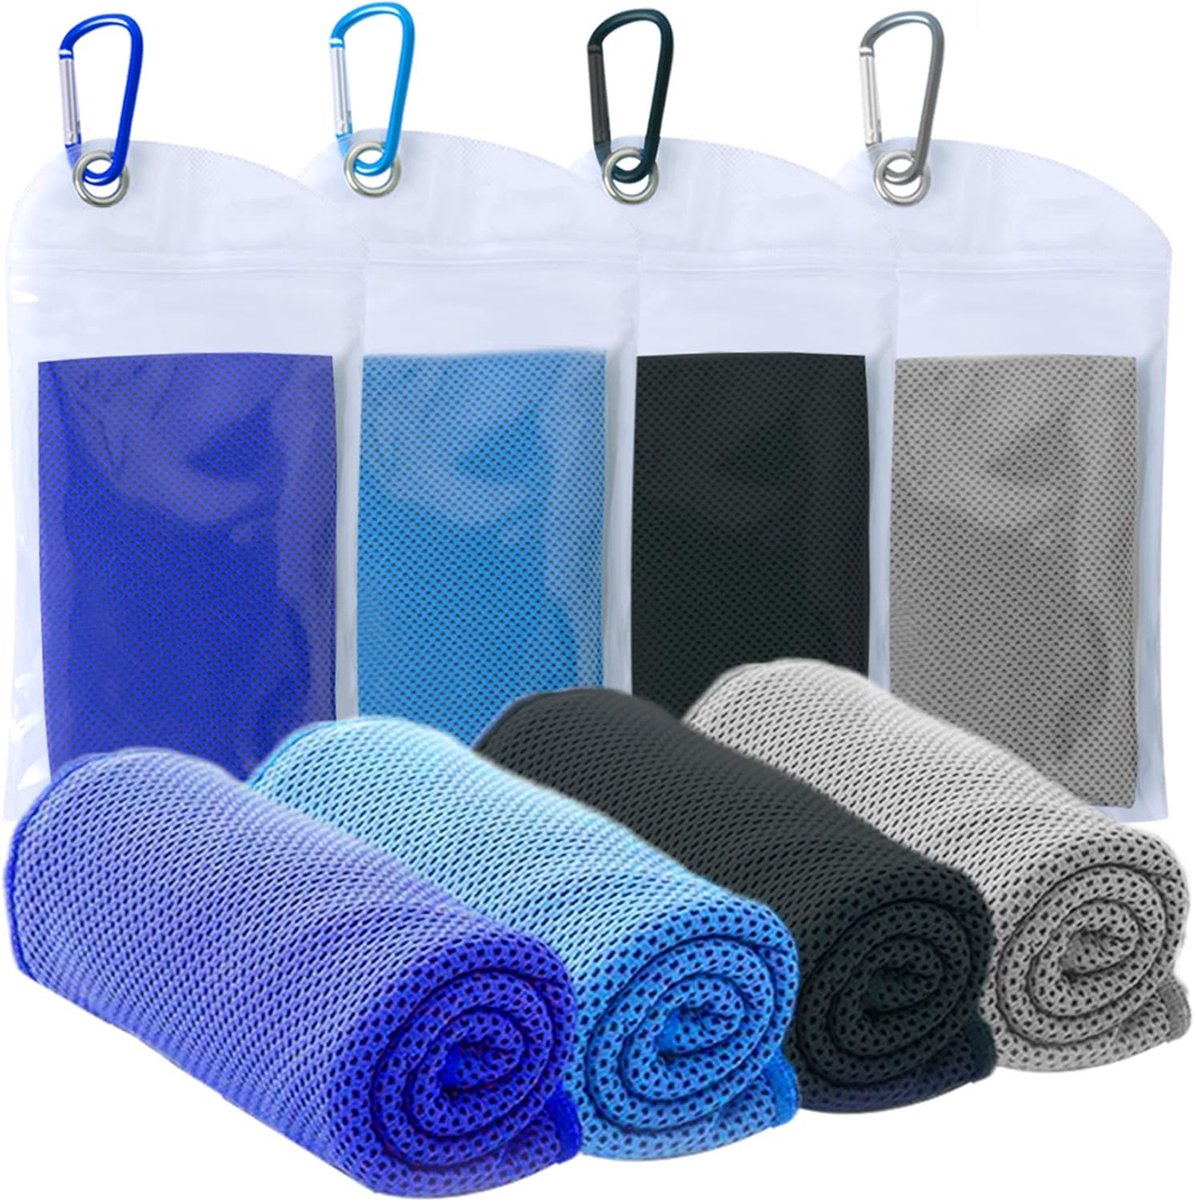 40 x 30 cm verkoelende handdoeken, 4 stuks verkoelende handdoek voor hals en gezicht, fitnesshanddoeken, yoga, golf, camping, outdoor-sporthanddoek, onmiddellijke koeling